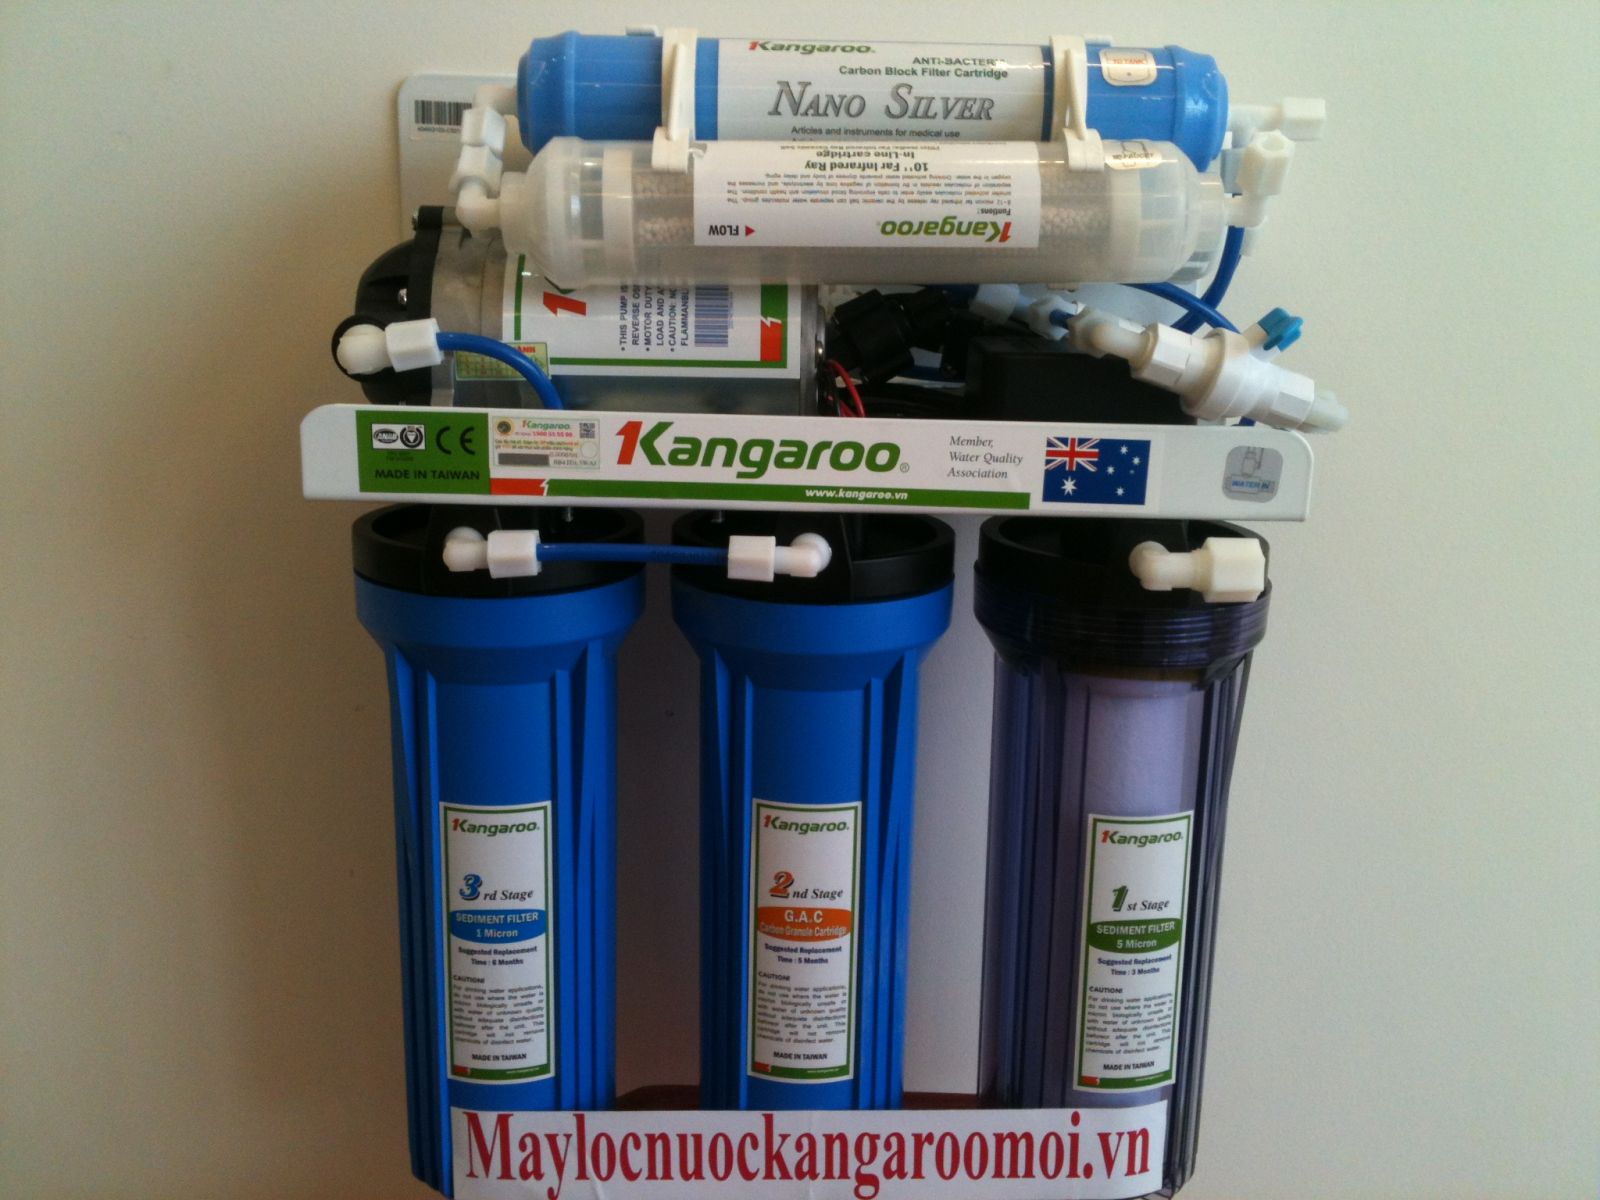 Máy lọc nước kangaroo KG103 RO 6 lõi lọc - không tủ